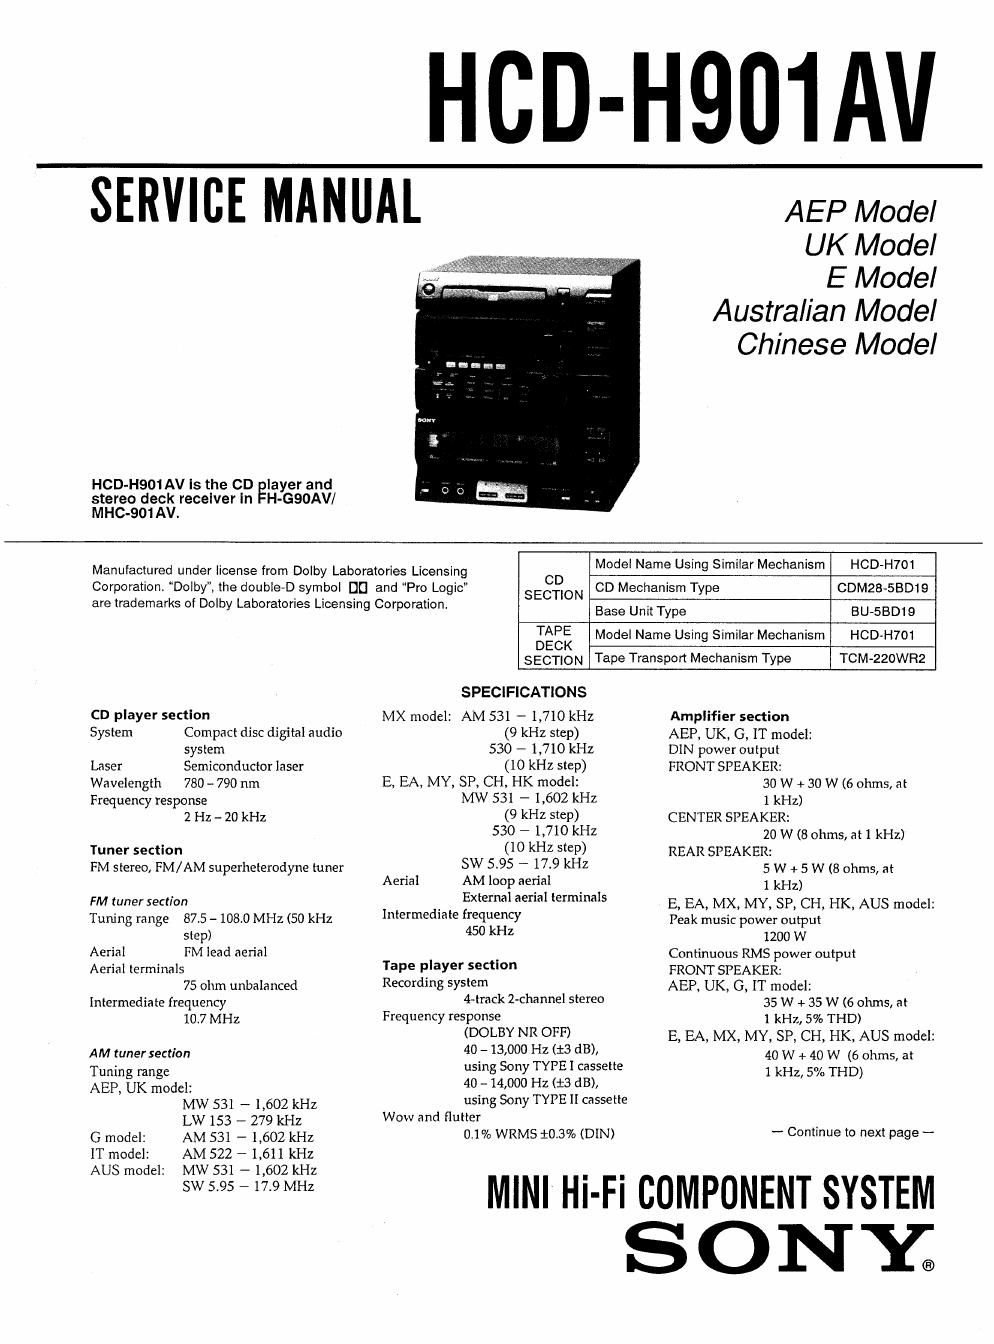 sony hcd h 901 av service manual